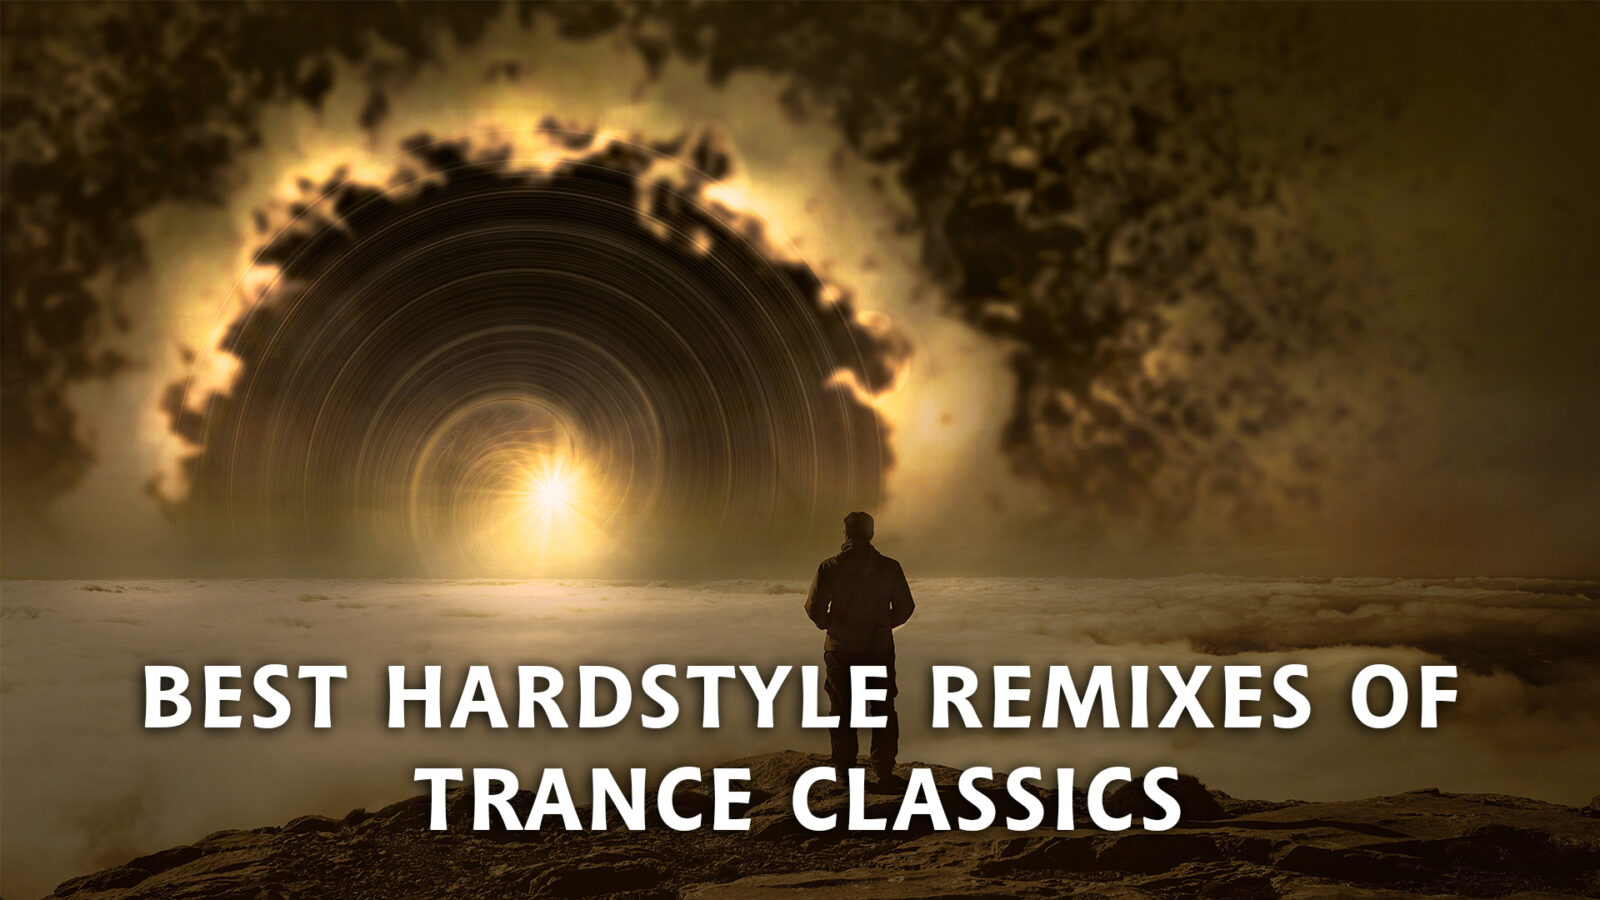 Pochette de la compilation 'Best Hardstyle Remixes Of Trance Classics' mixée par Stunter - Les meilleurs remixes Hardstyle des plus grands classiques de la Trance